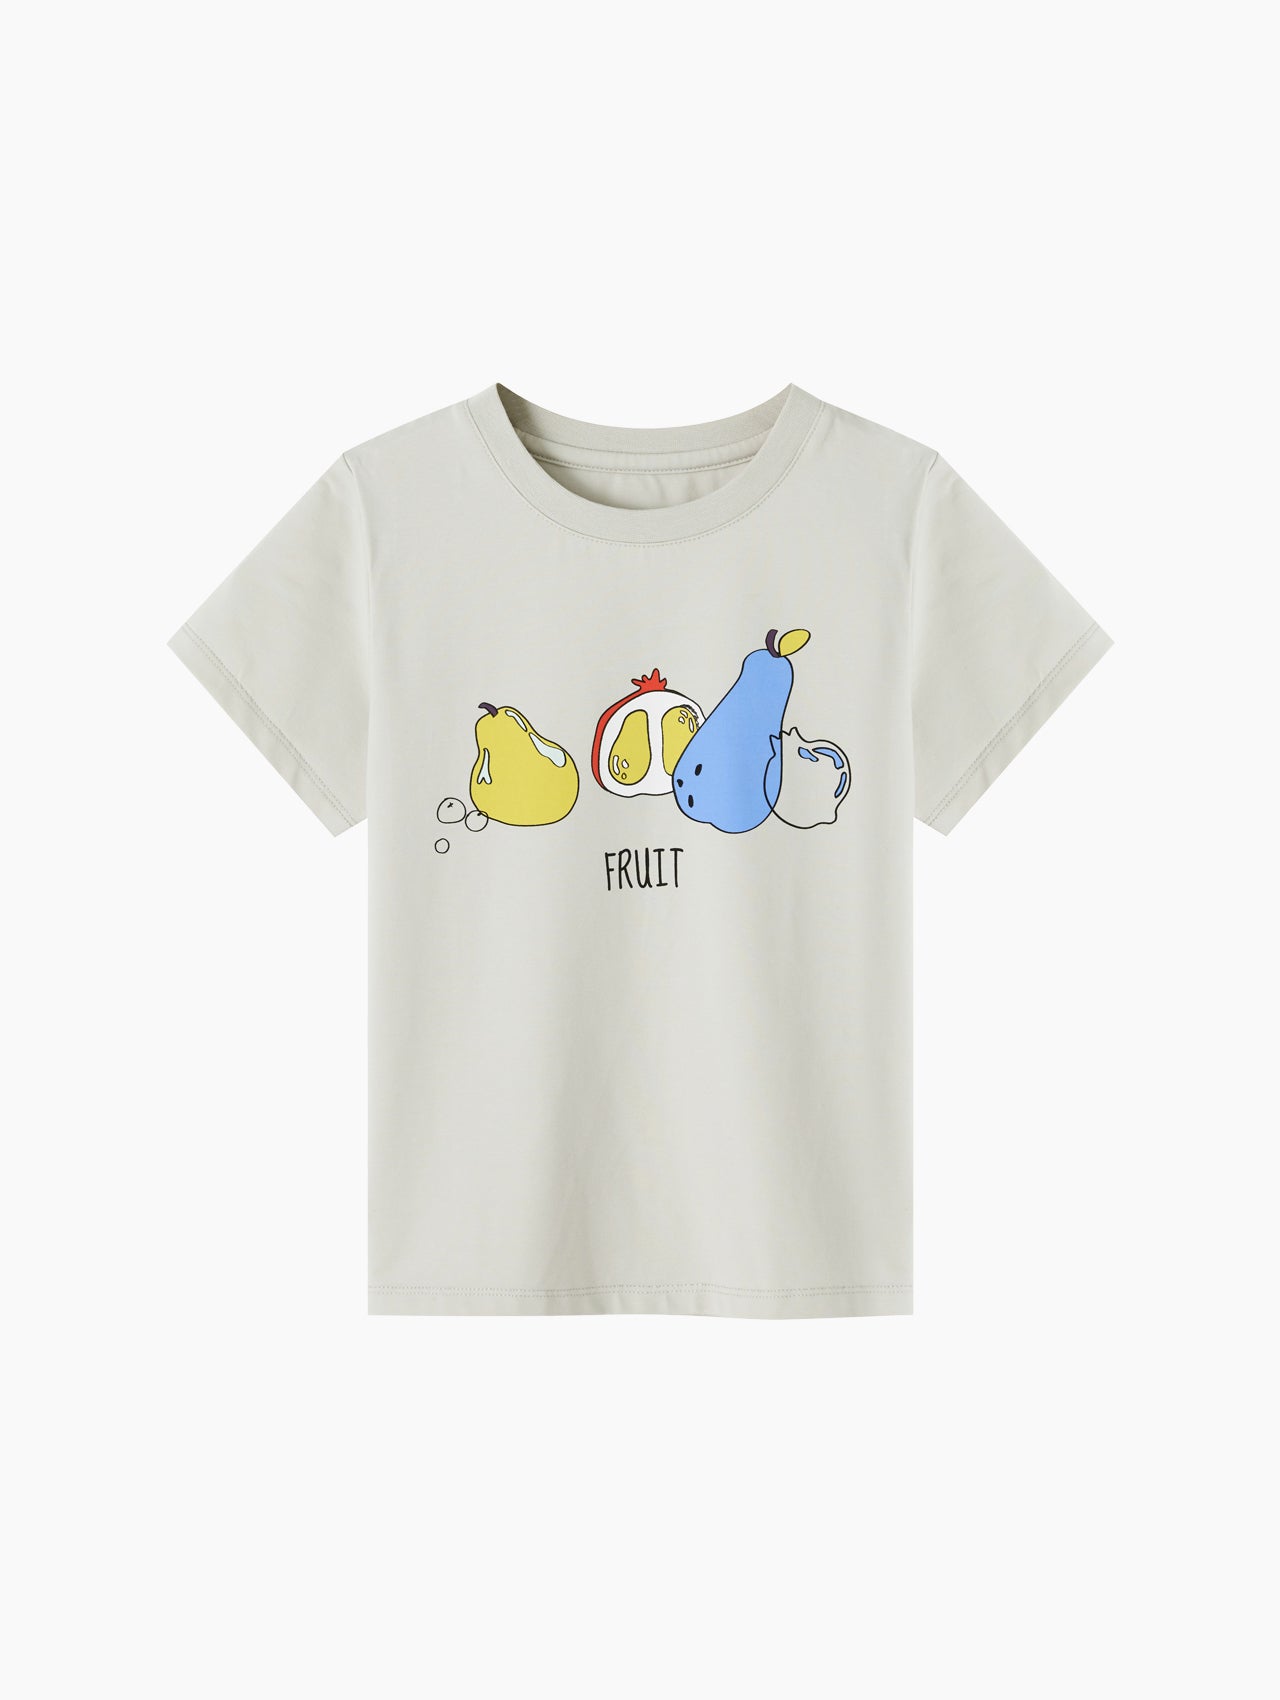 Cute Pattern Cotton T-Shirts